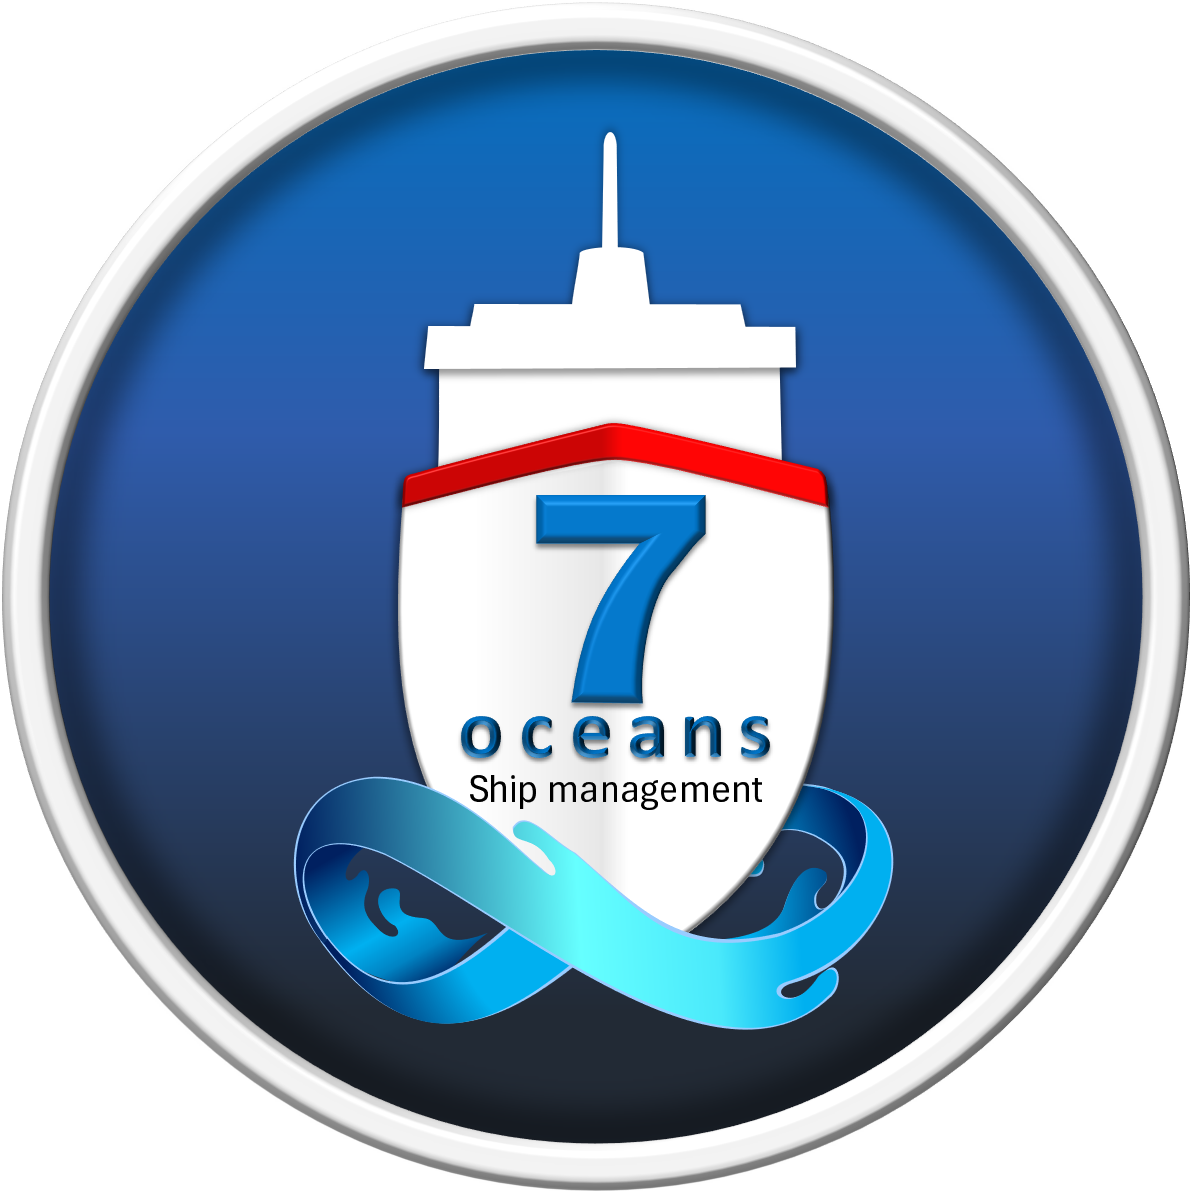 About Us – PT Seven Oceans Ship Management